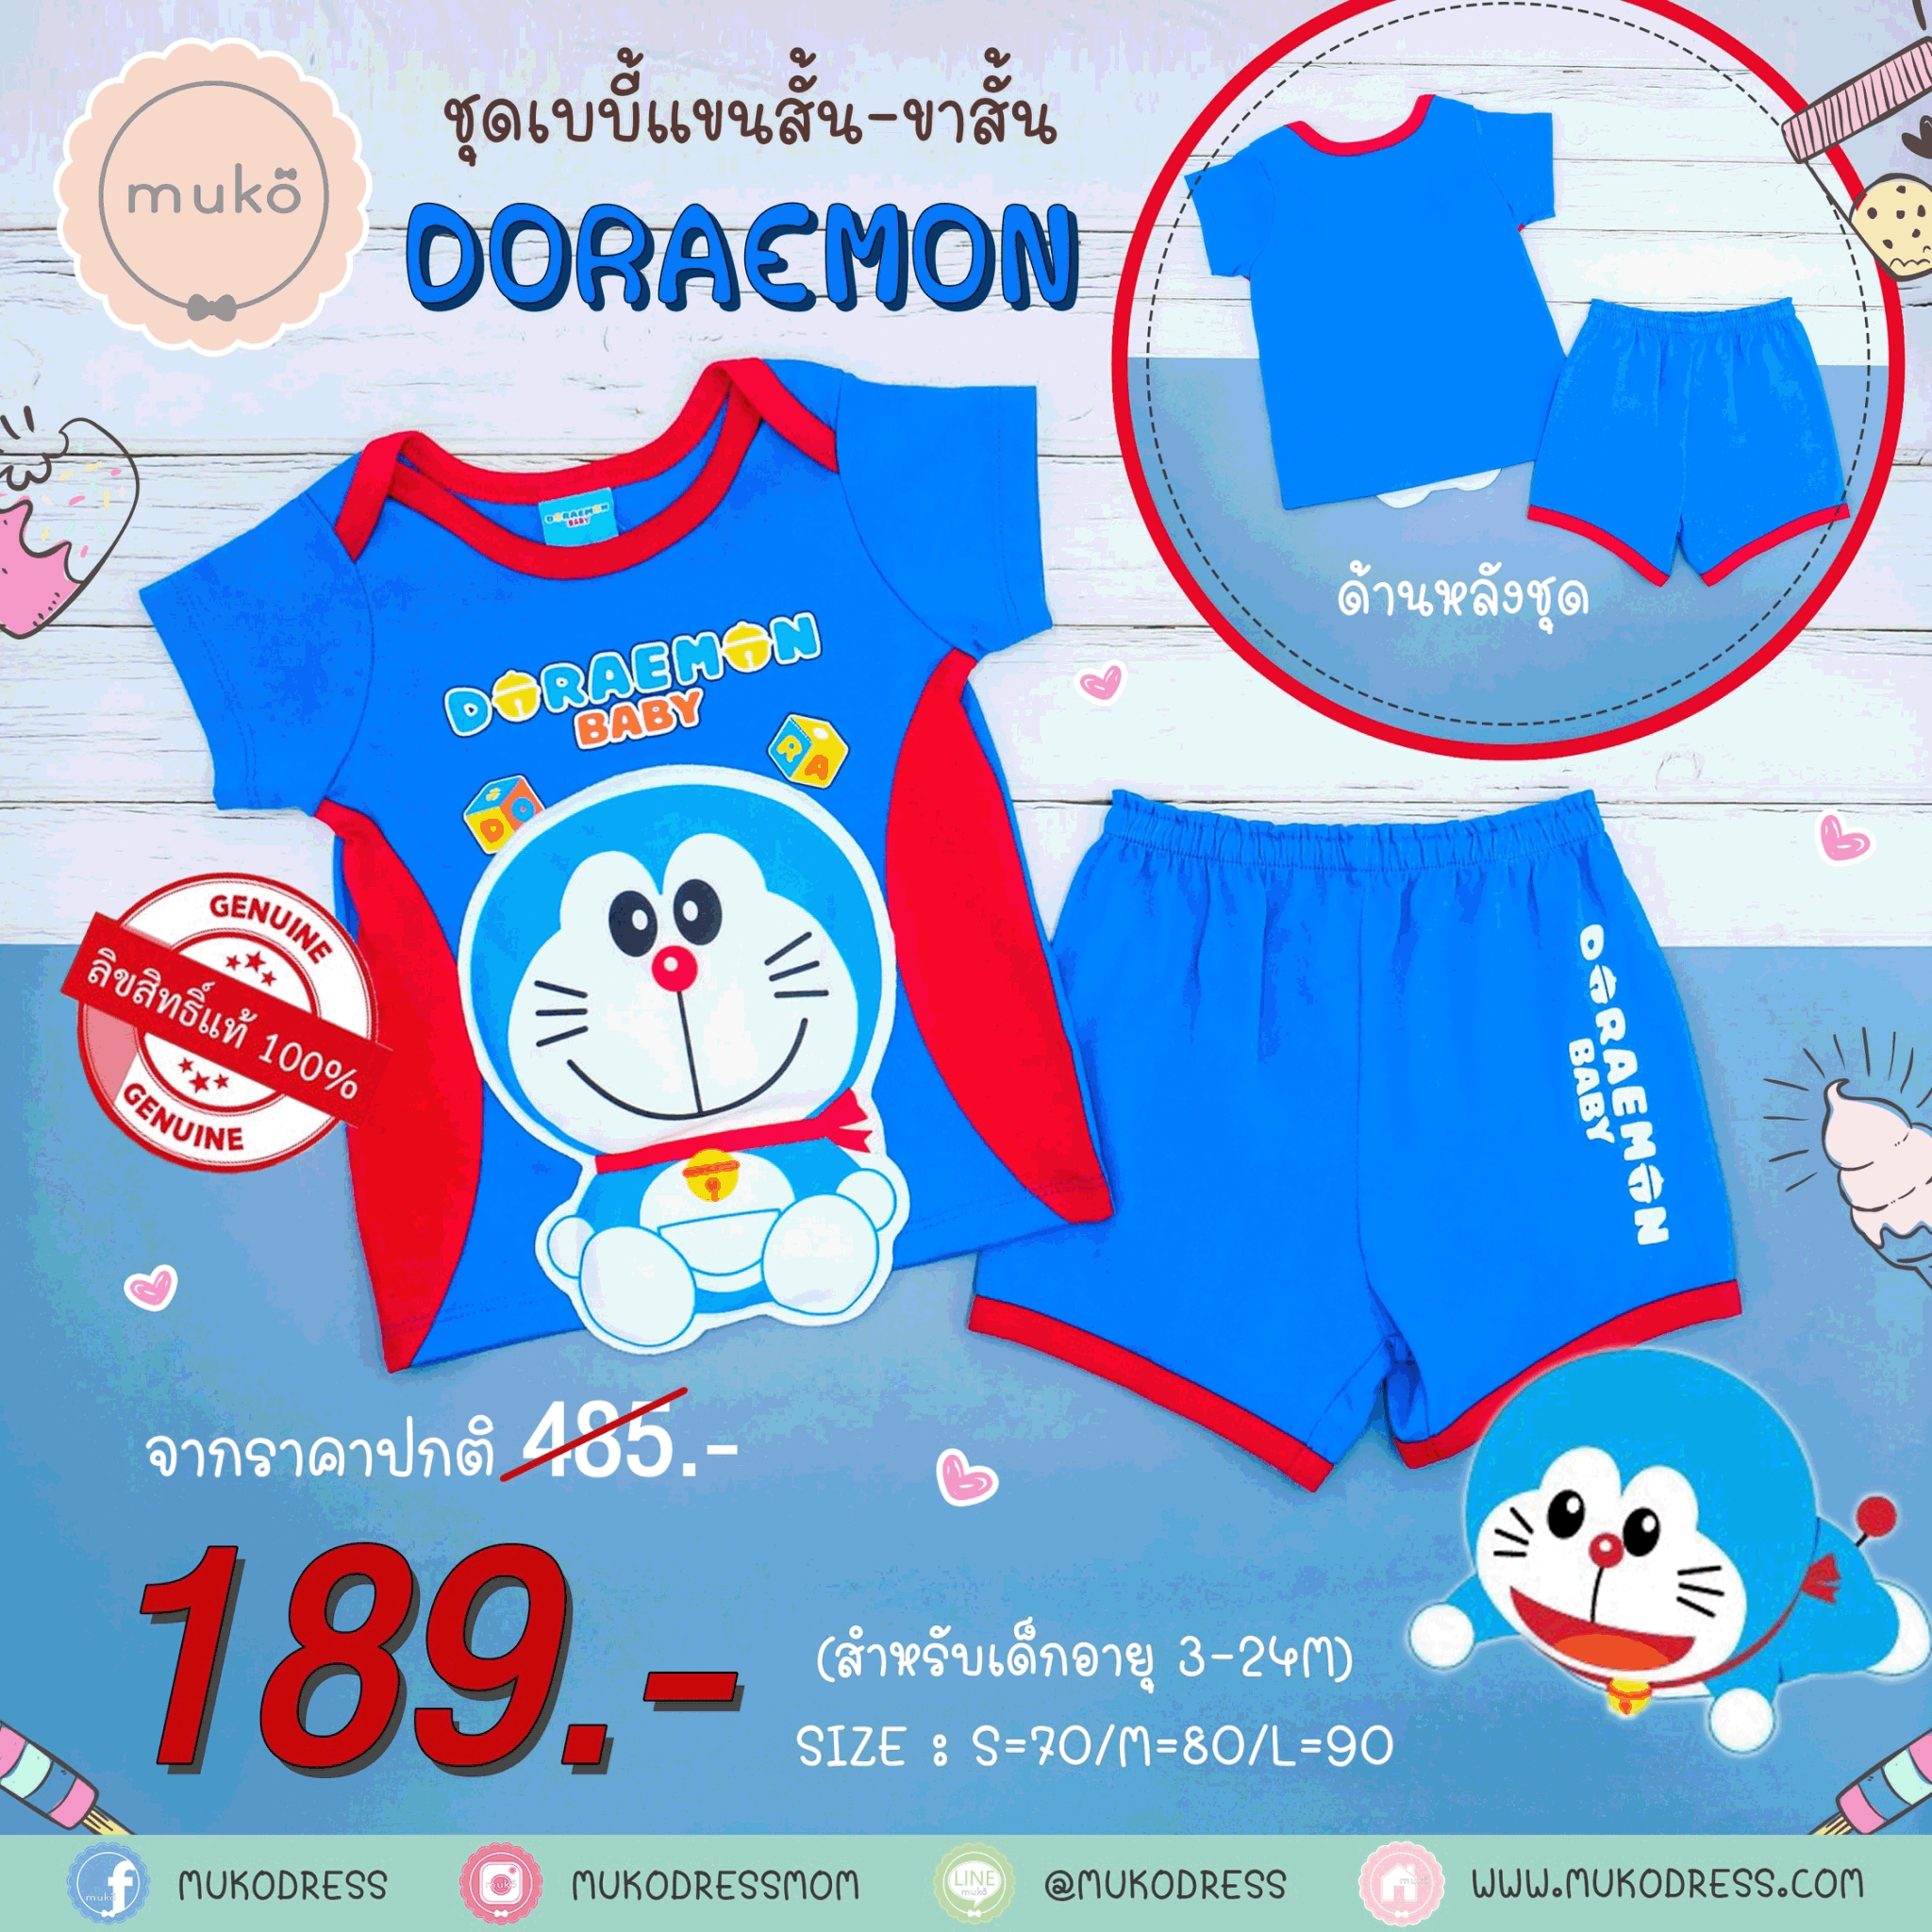 ชุดเบบี้ 6-12 เดือน แขนสั้น-ขาสั้น (M=80) ADC047-41-L-Midnight Blue M ลายโดเรม่อน Doraemon